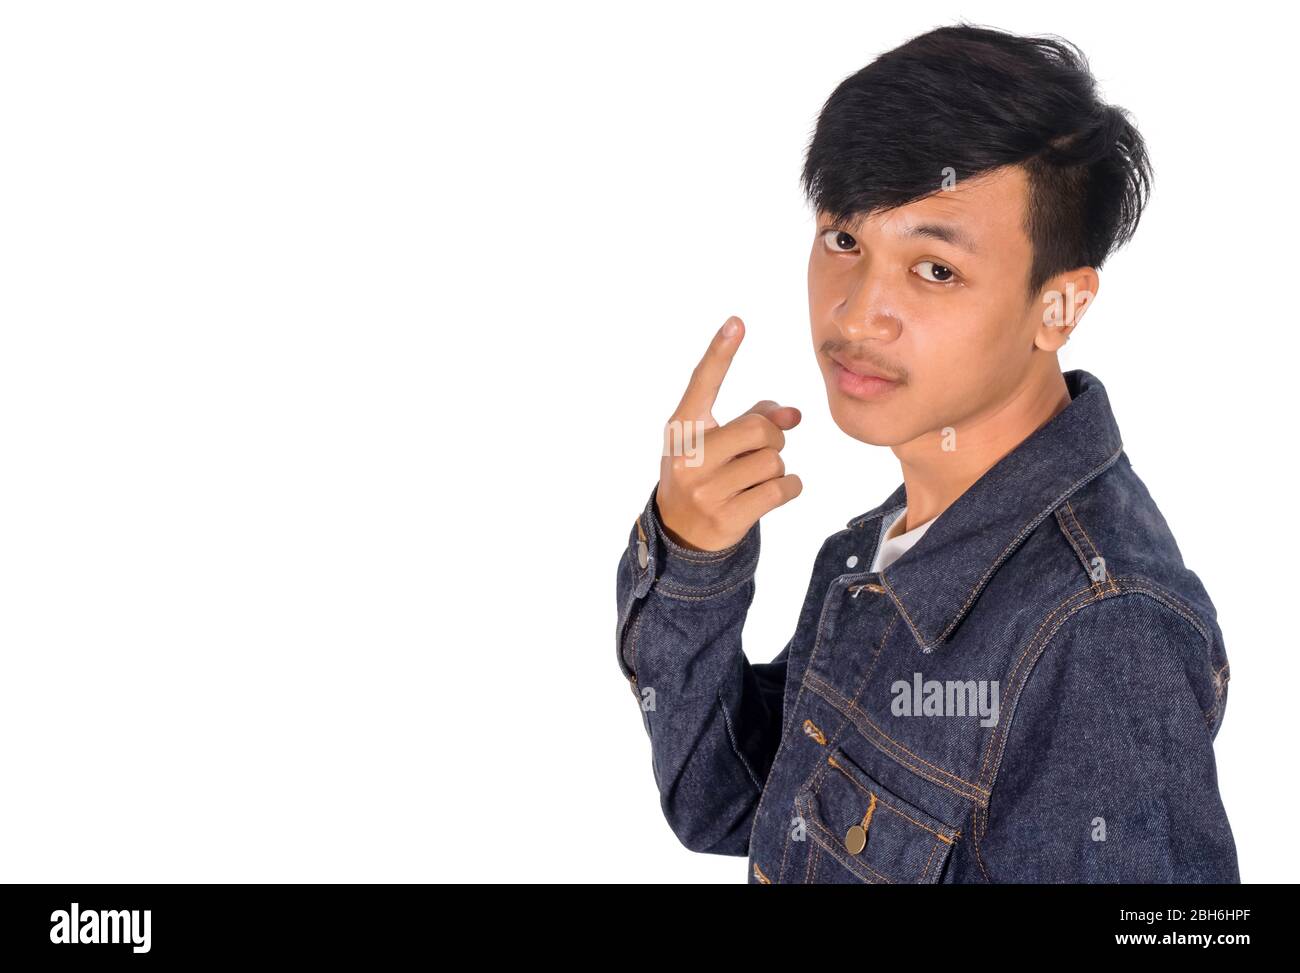 Photo isolée du portrait de vue latérale d'un garçon asiatique dans une veste Jean montrant son doigt de point. Banque D'Images